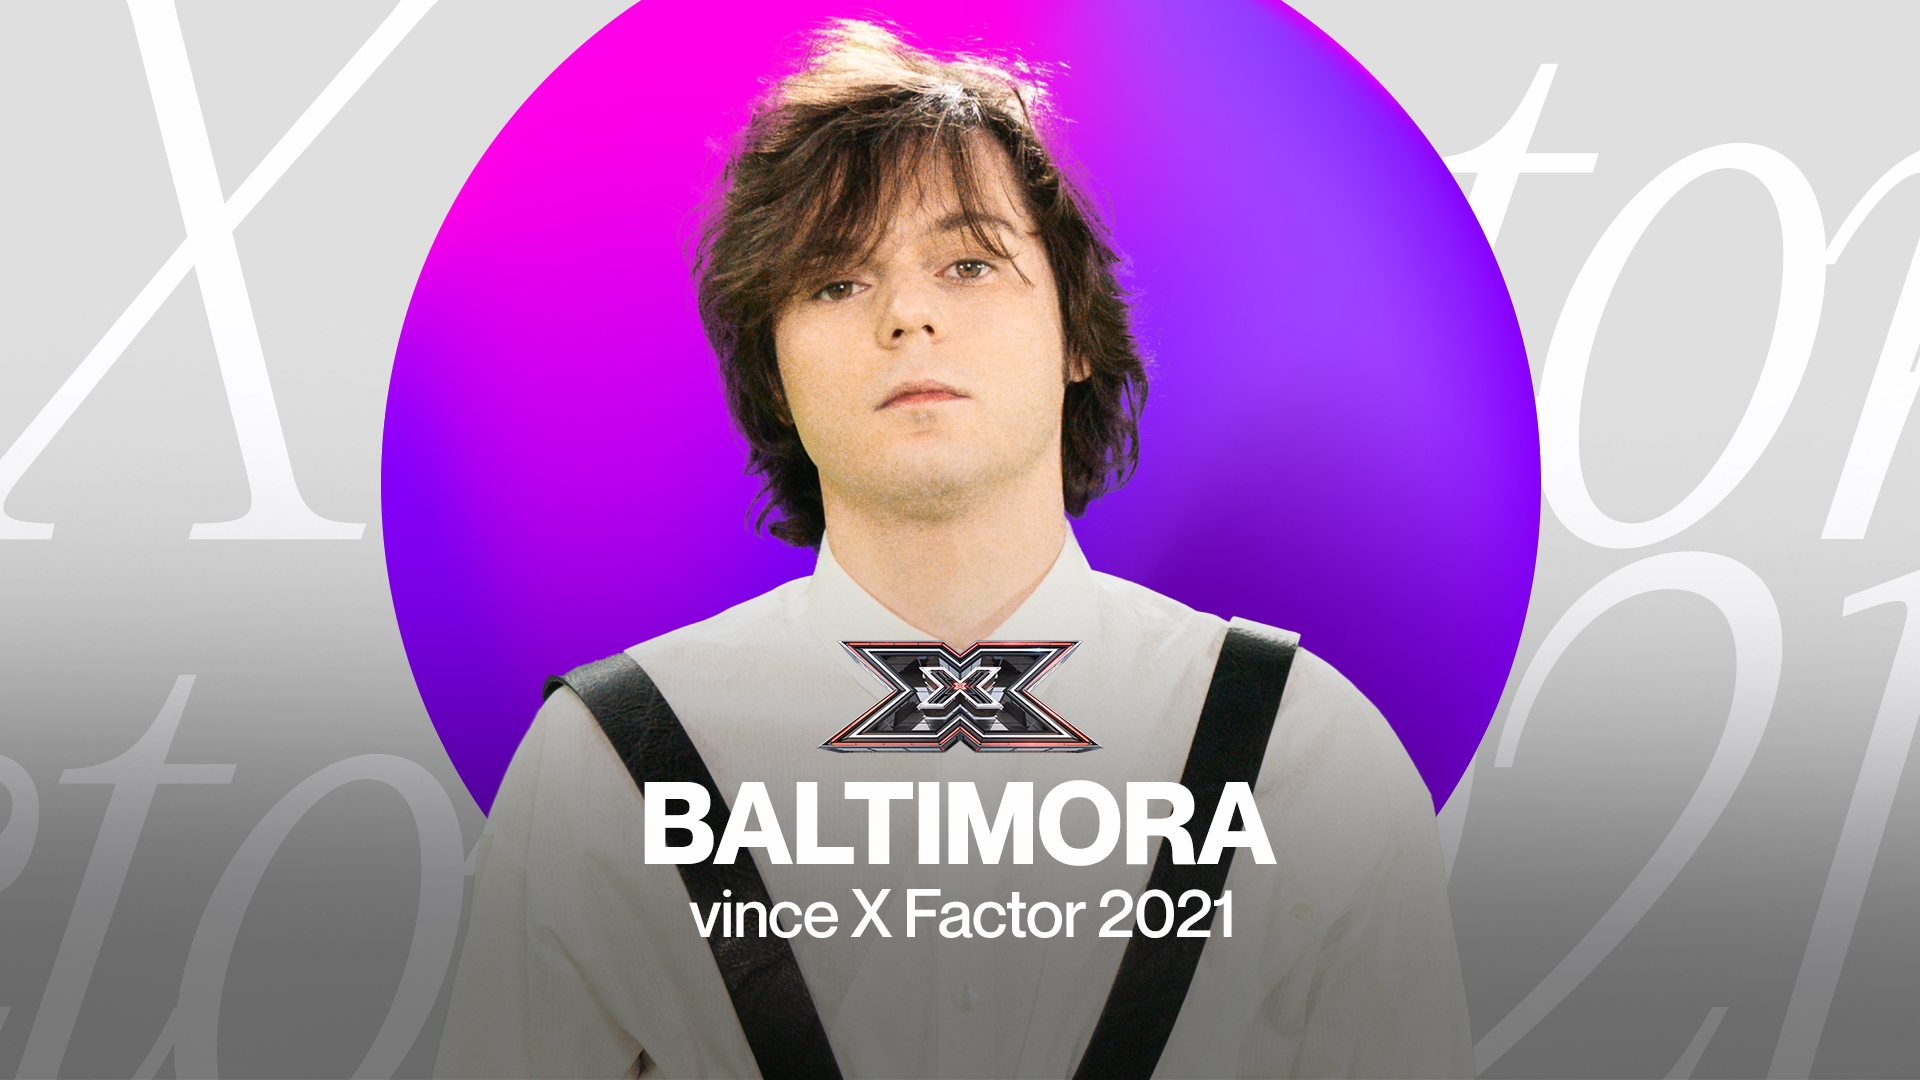 X Factor 2021, vince Baltimora